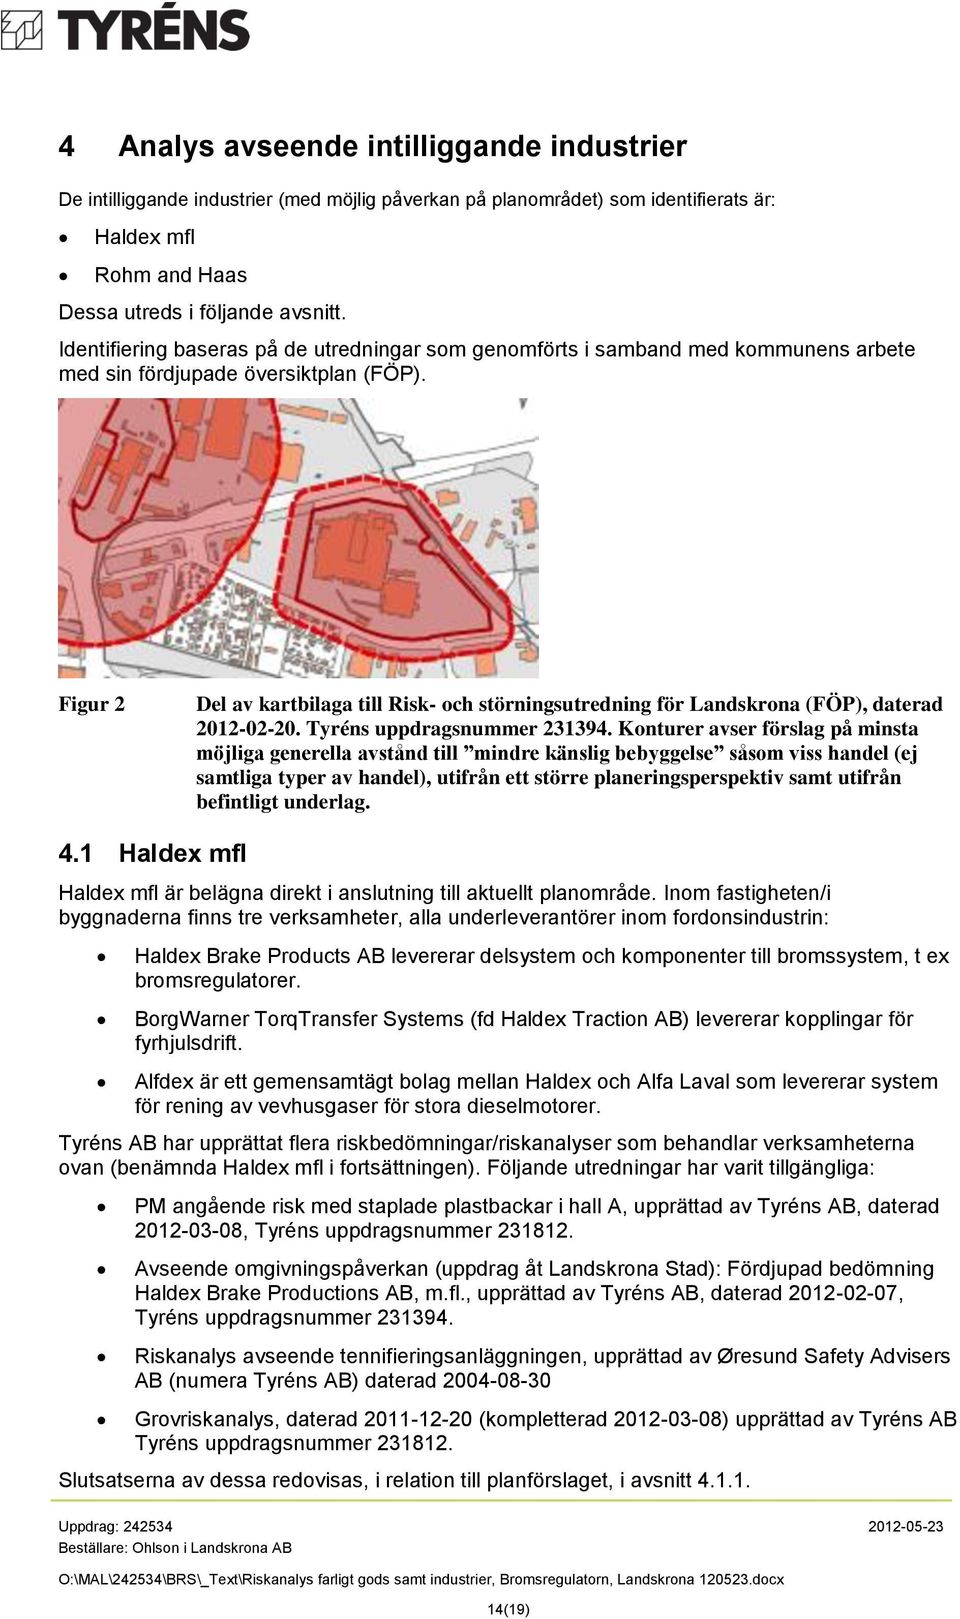 Figur 2 Del av kartbilaga till Risk- och störningsutredning för Landskrona (FÖP), daterad 2012-02-20. Tyréns uppdragsnummer 231394.